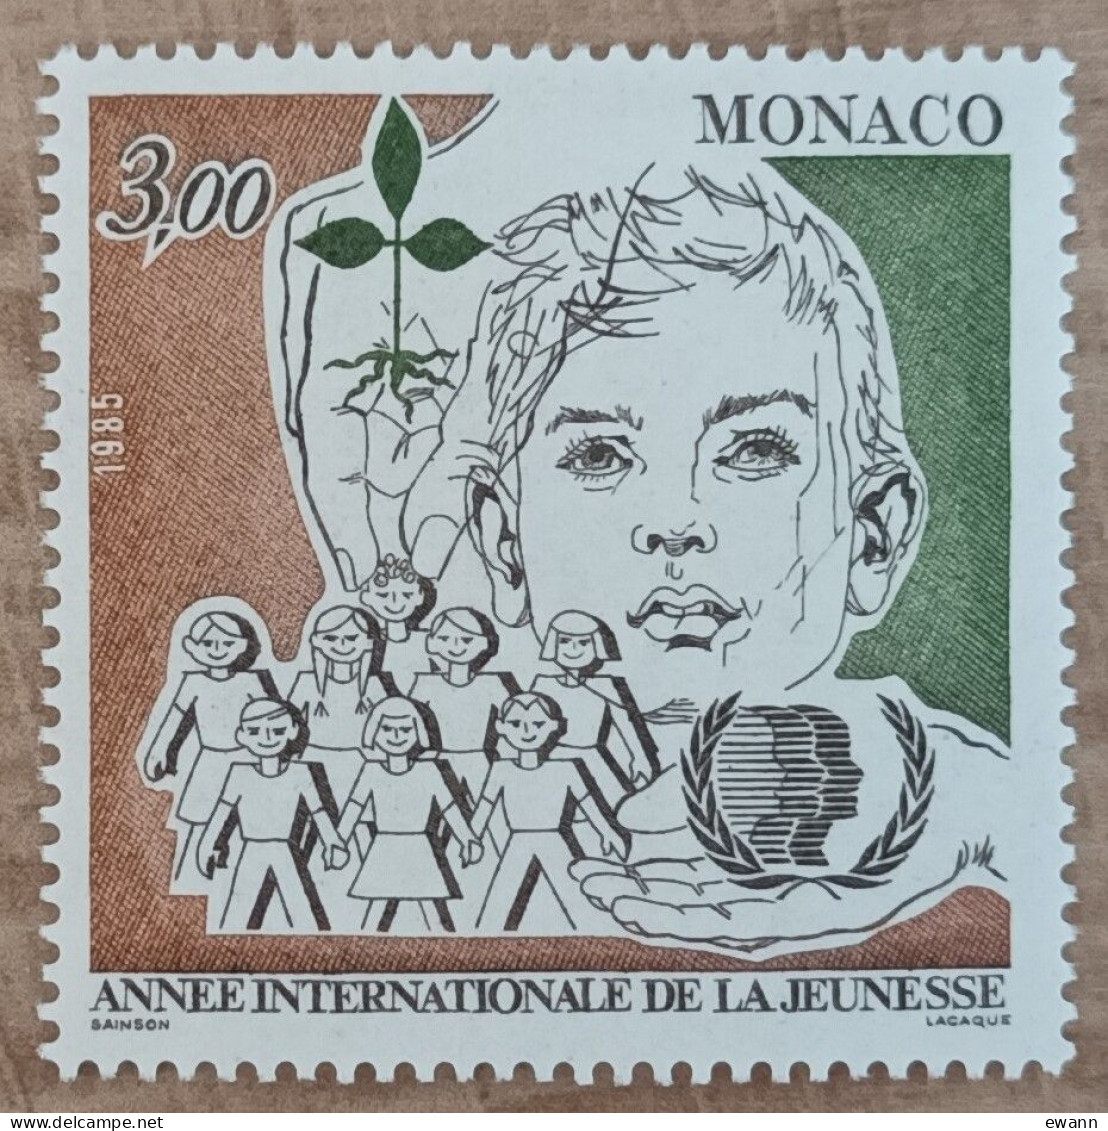 Monaco - YT N°1478 - Année Internationale De La Jeunesse - 1985 - Neuf - Unused Stamps